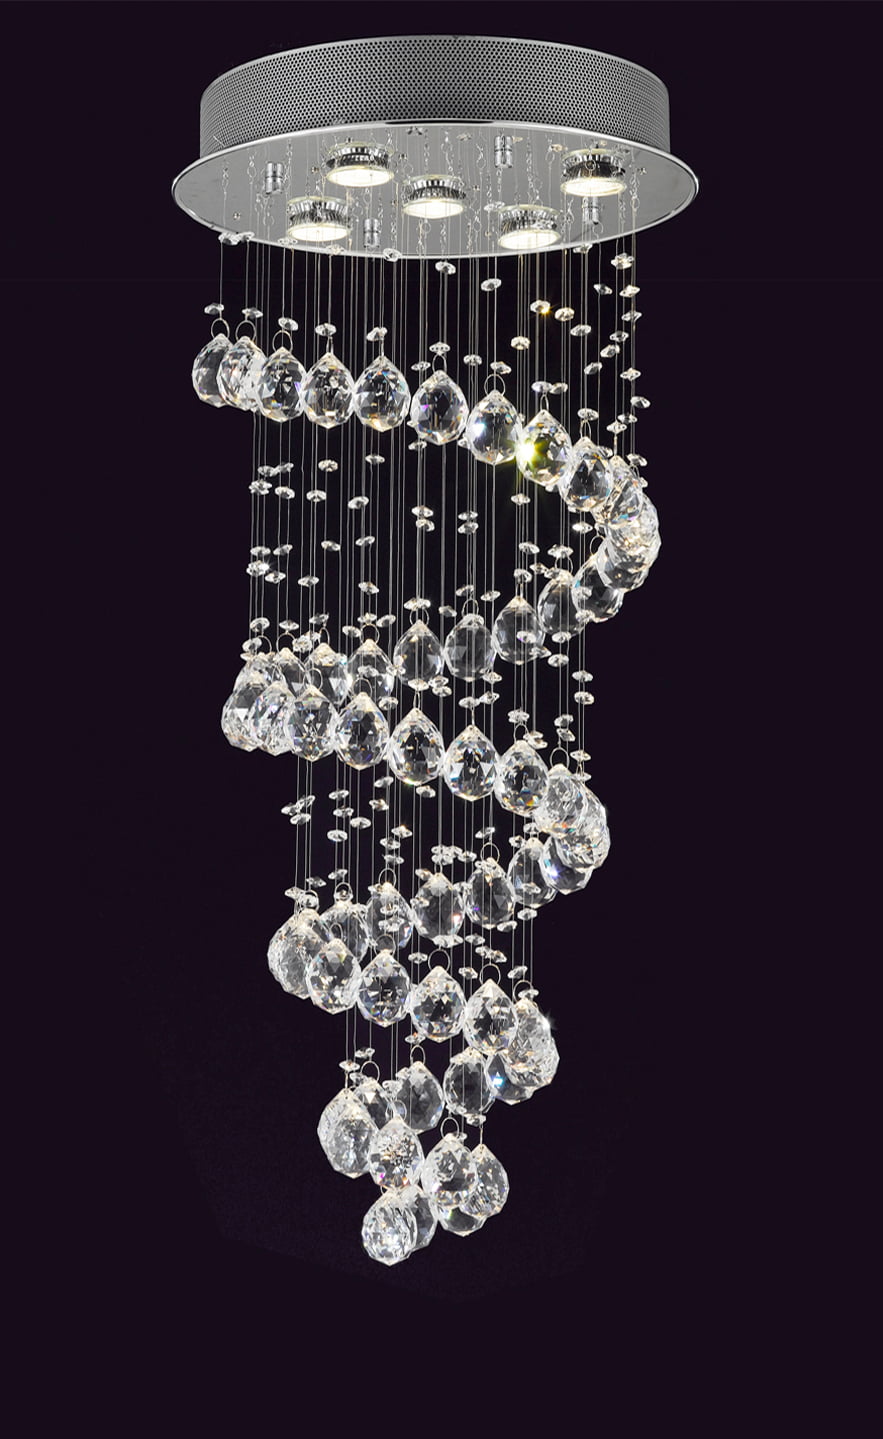 modern glass ball chandelier